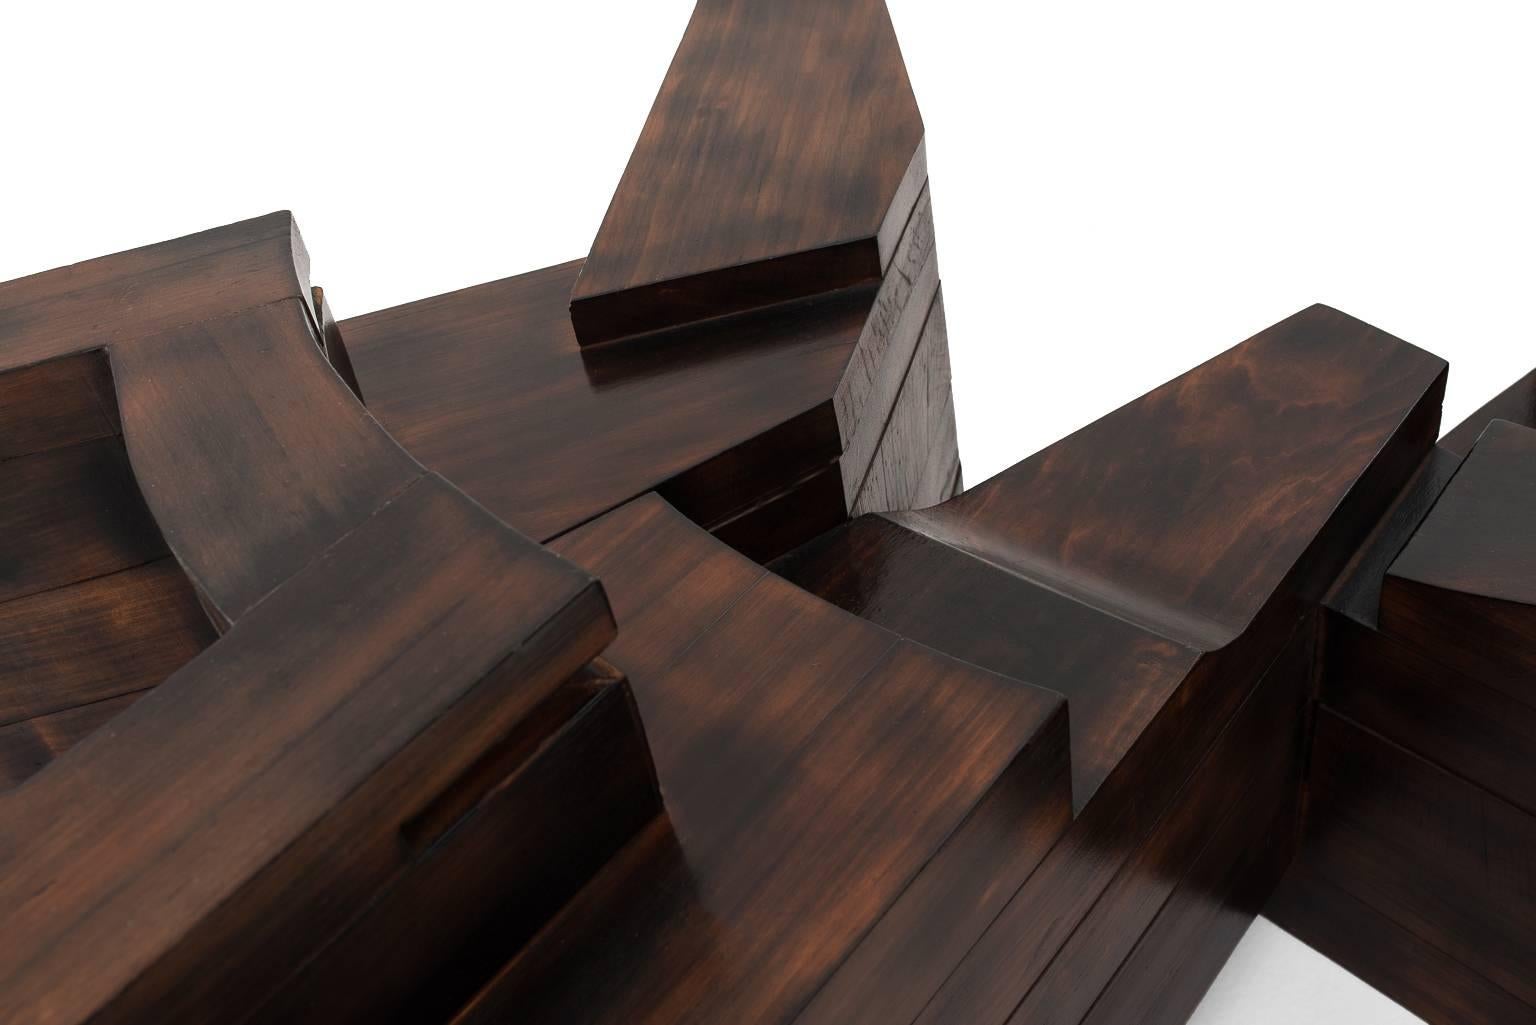 Wood Unique Sculptural Coffee Table by Nerone E. Patuzzi